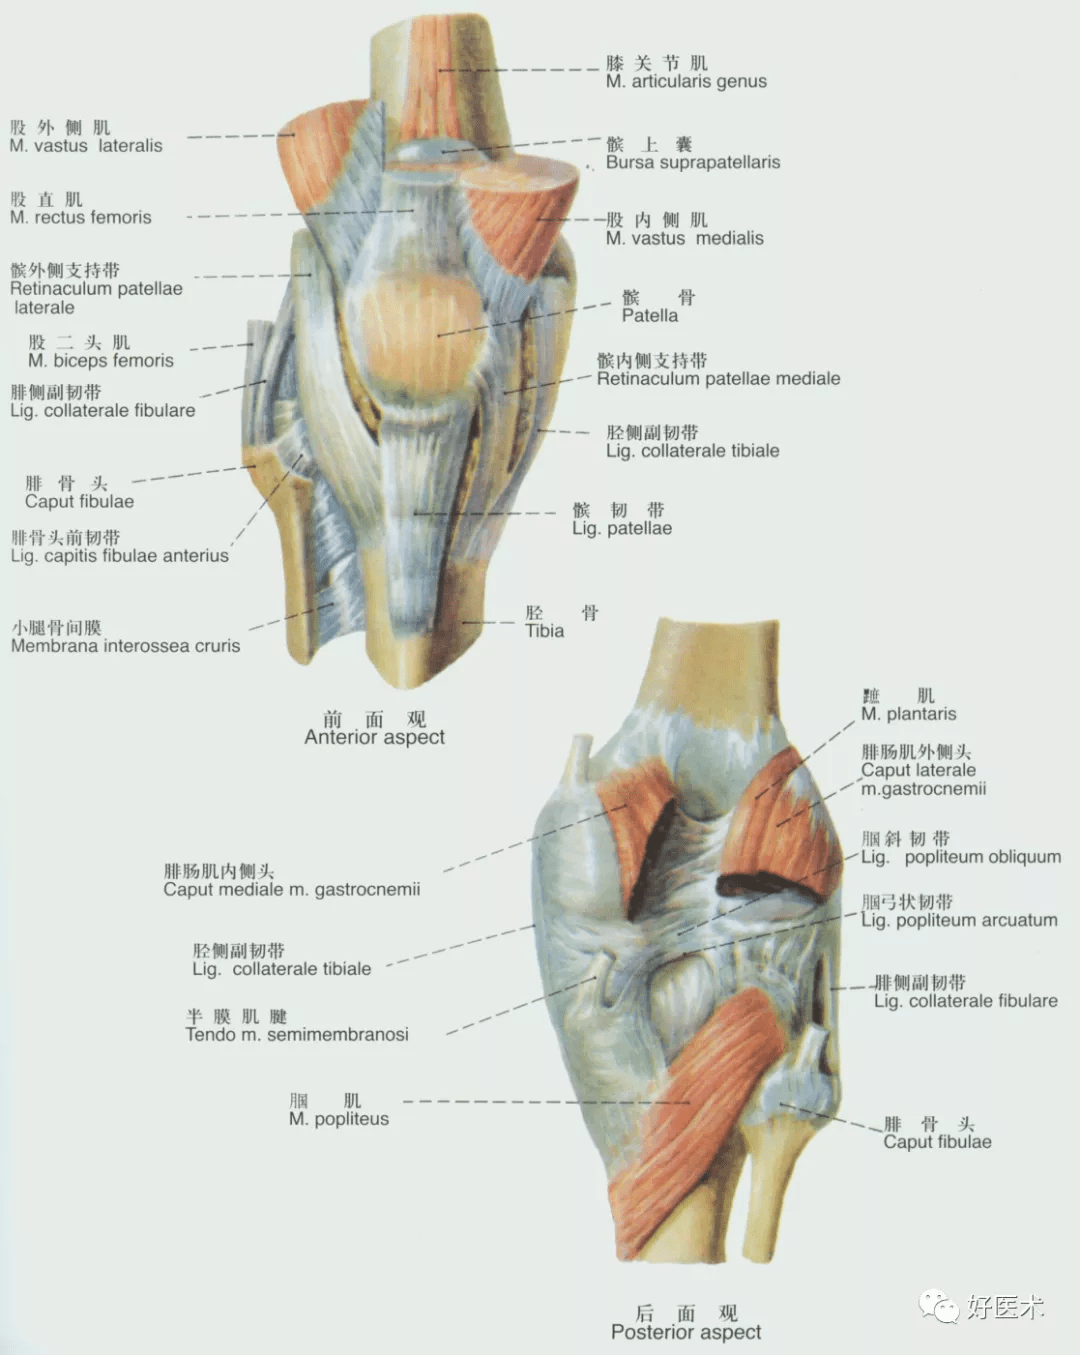 韧带与关节囊的滑膜之间,有膝脂体;与胫骨之间则以髌下深囊相隔.